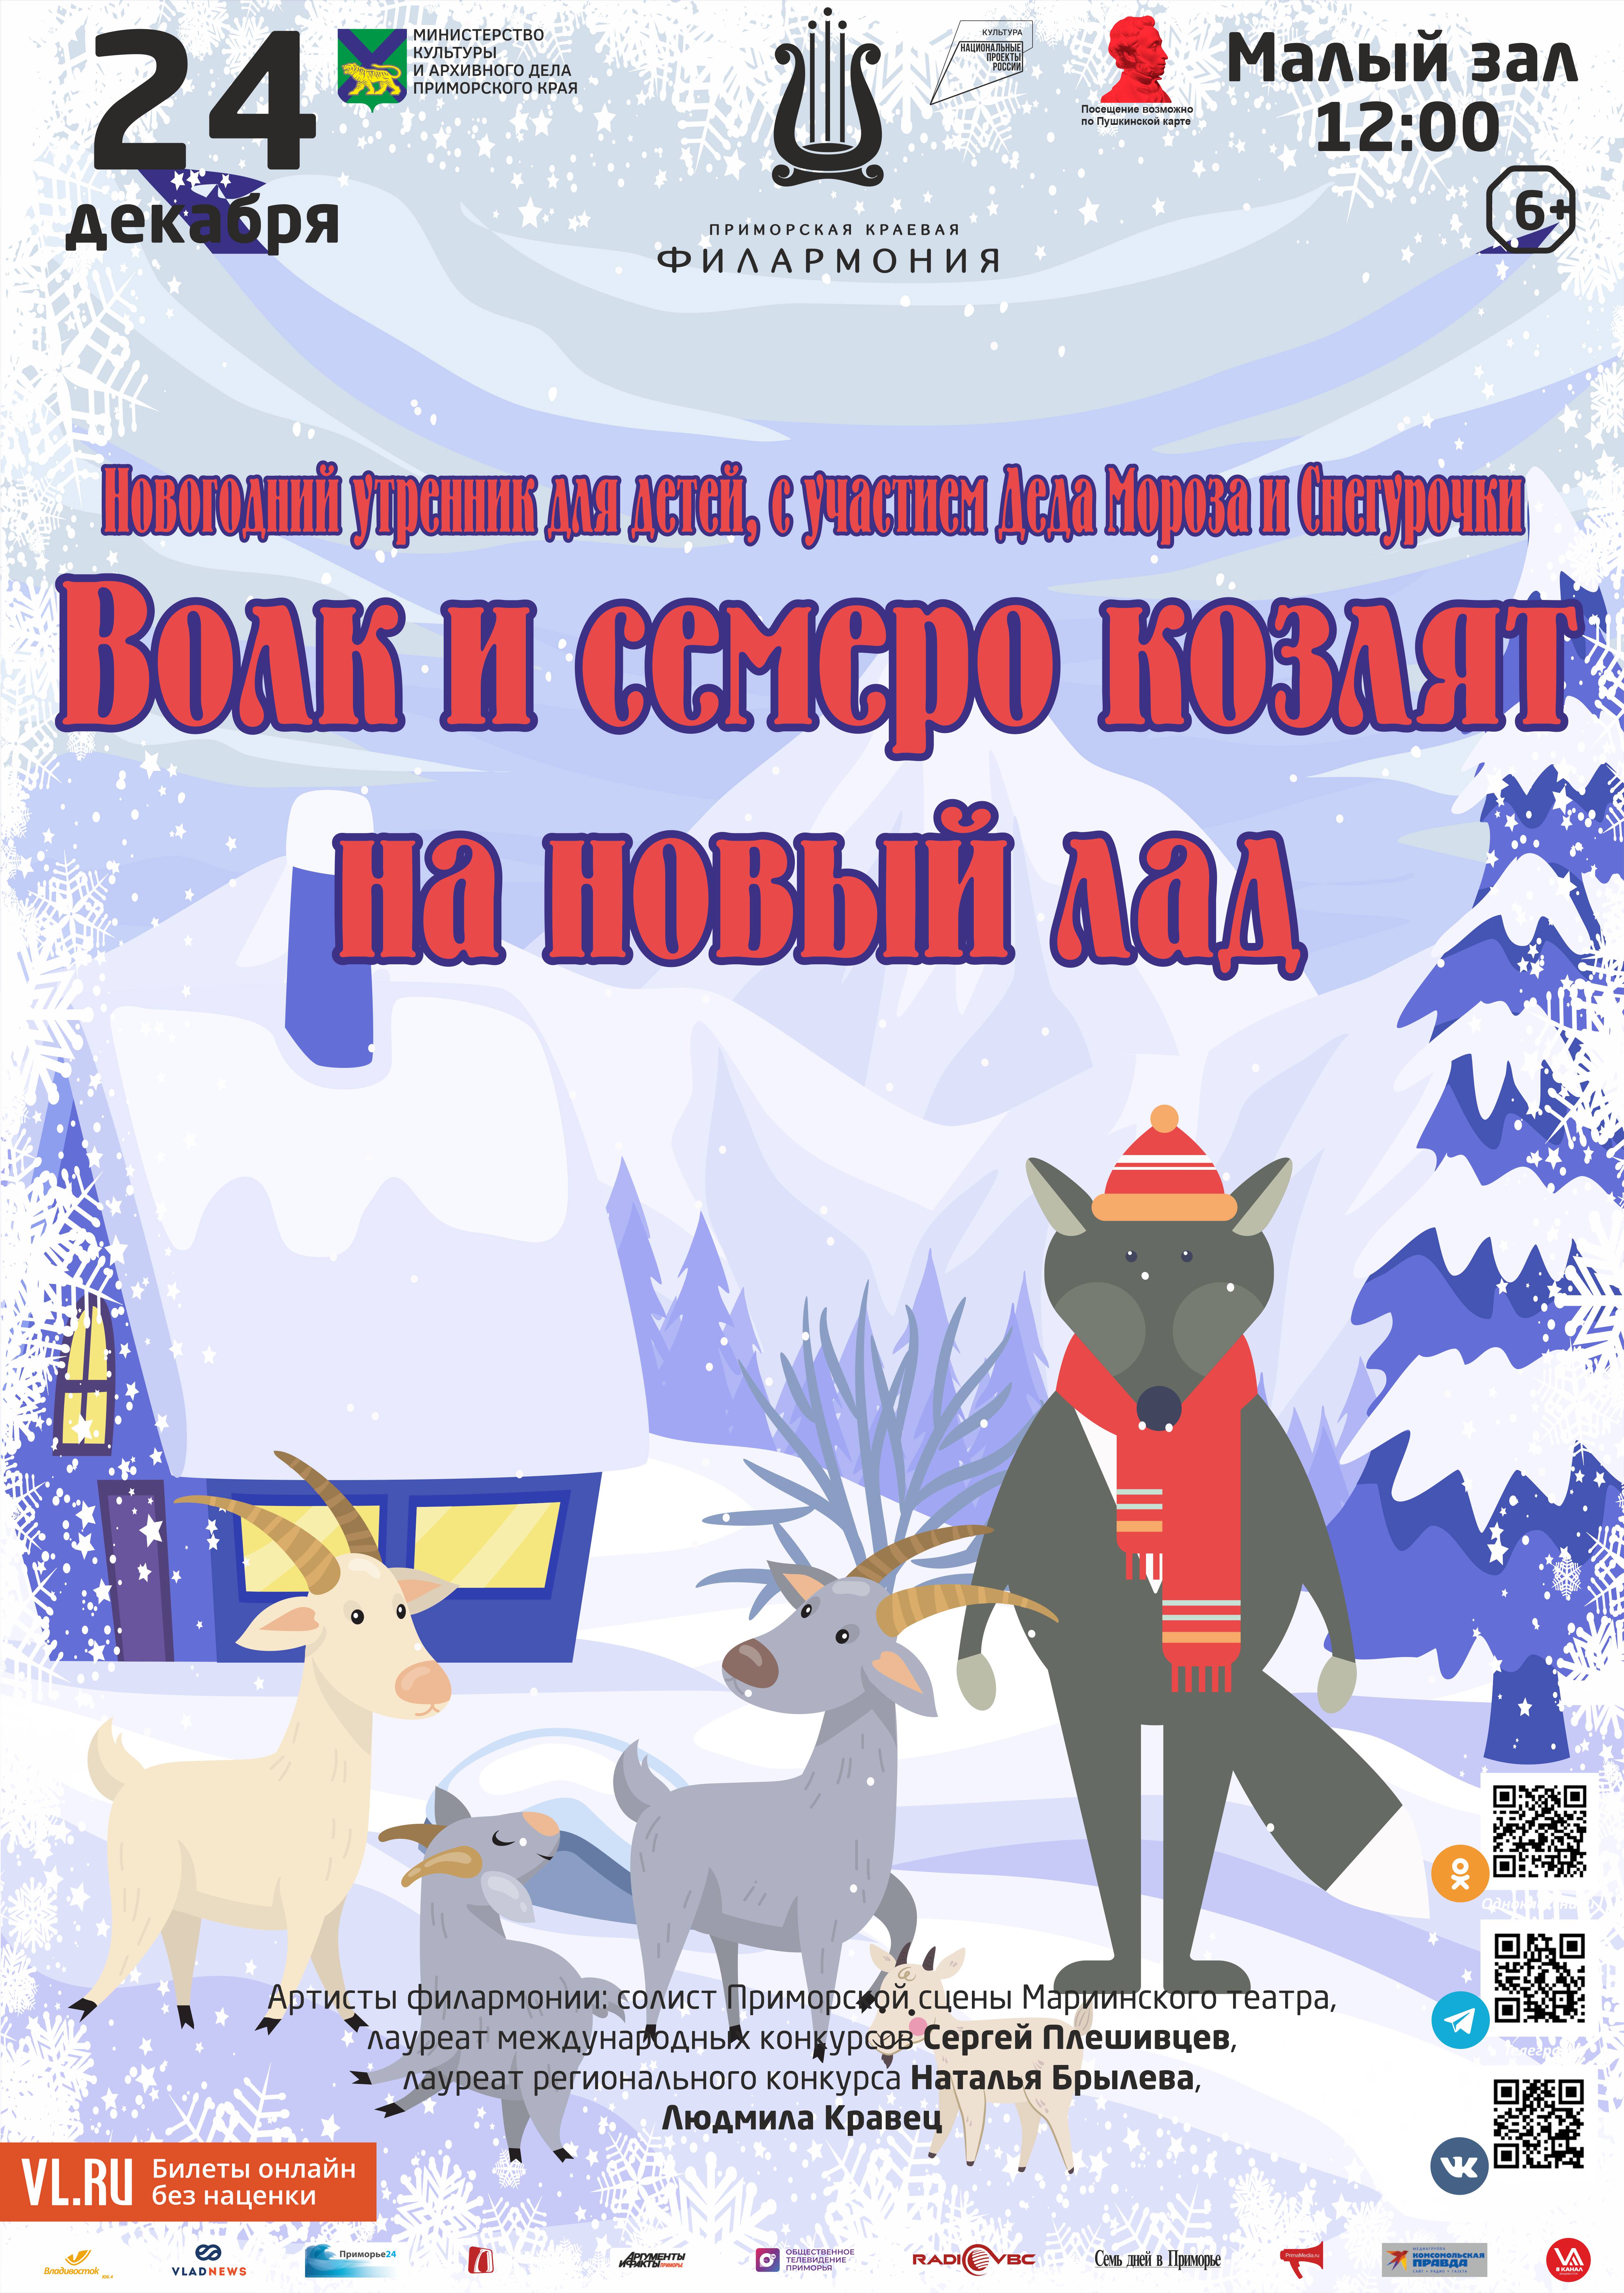 24 декабря Детская музыкальная программа «Волк и семеро козлят на новый лад»